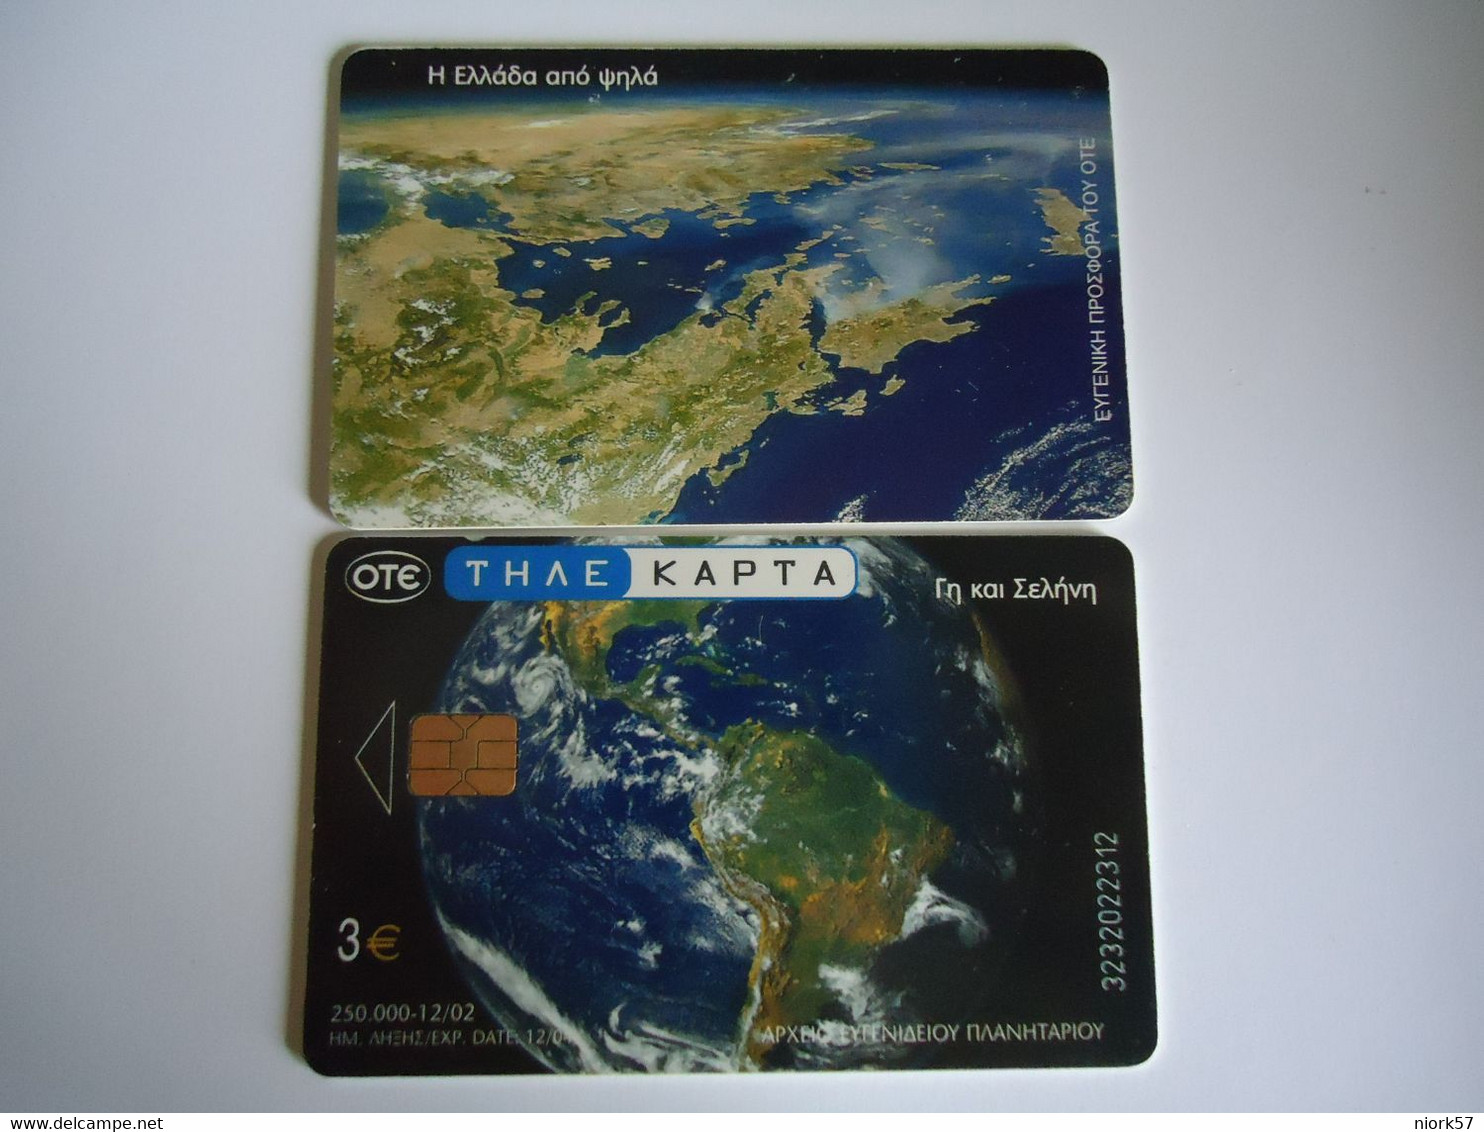 GREECE  USED  CARDS  PLANET  SPACE - Ruimtevaart